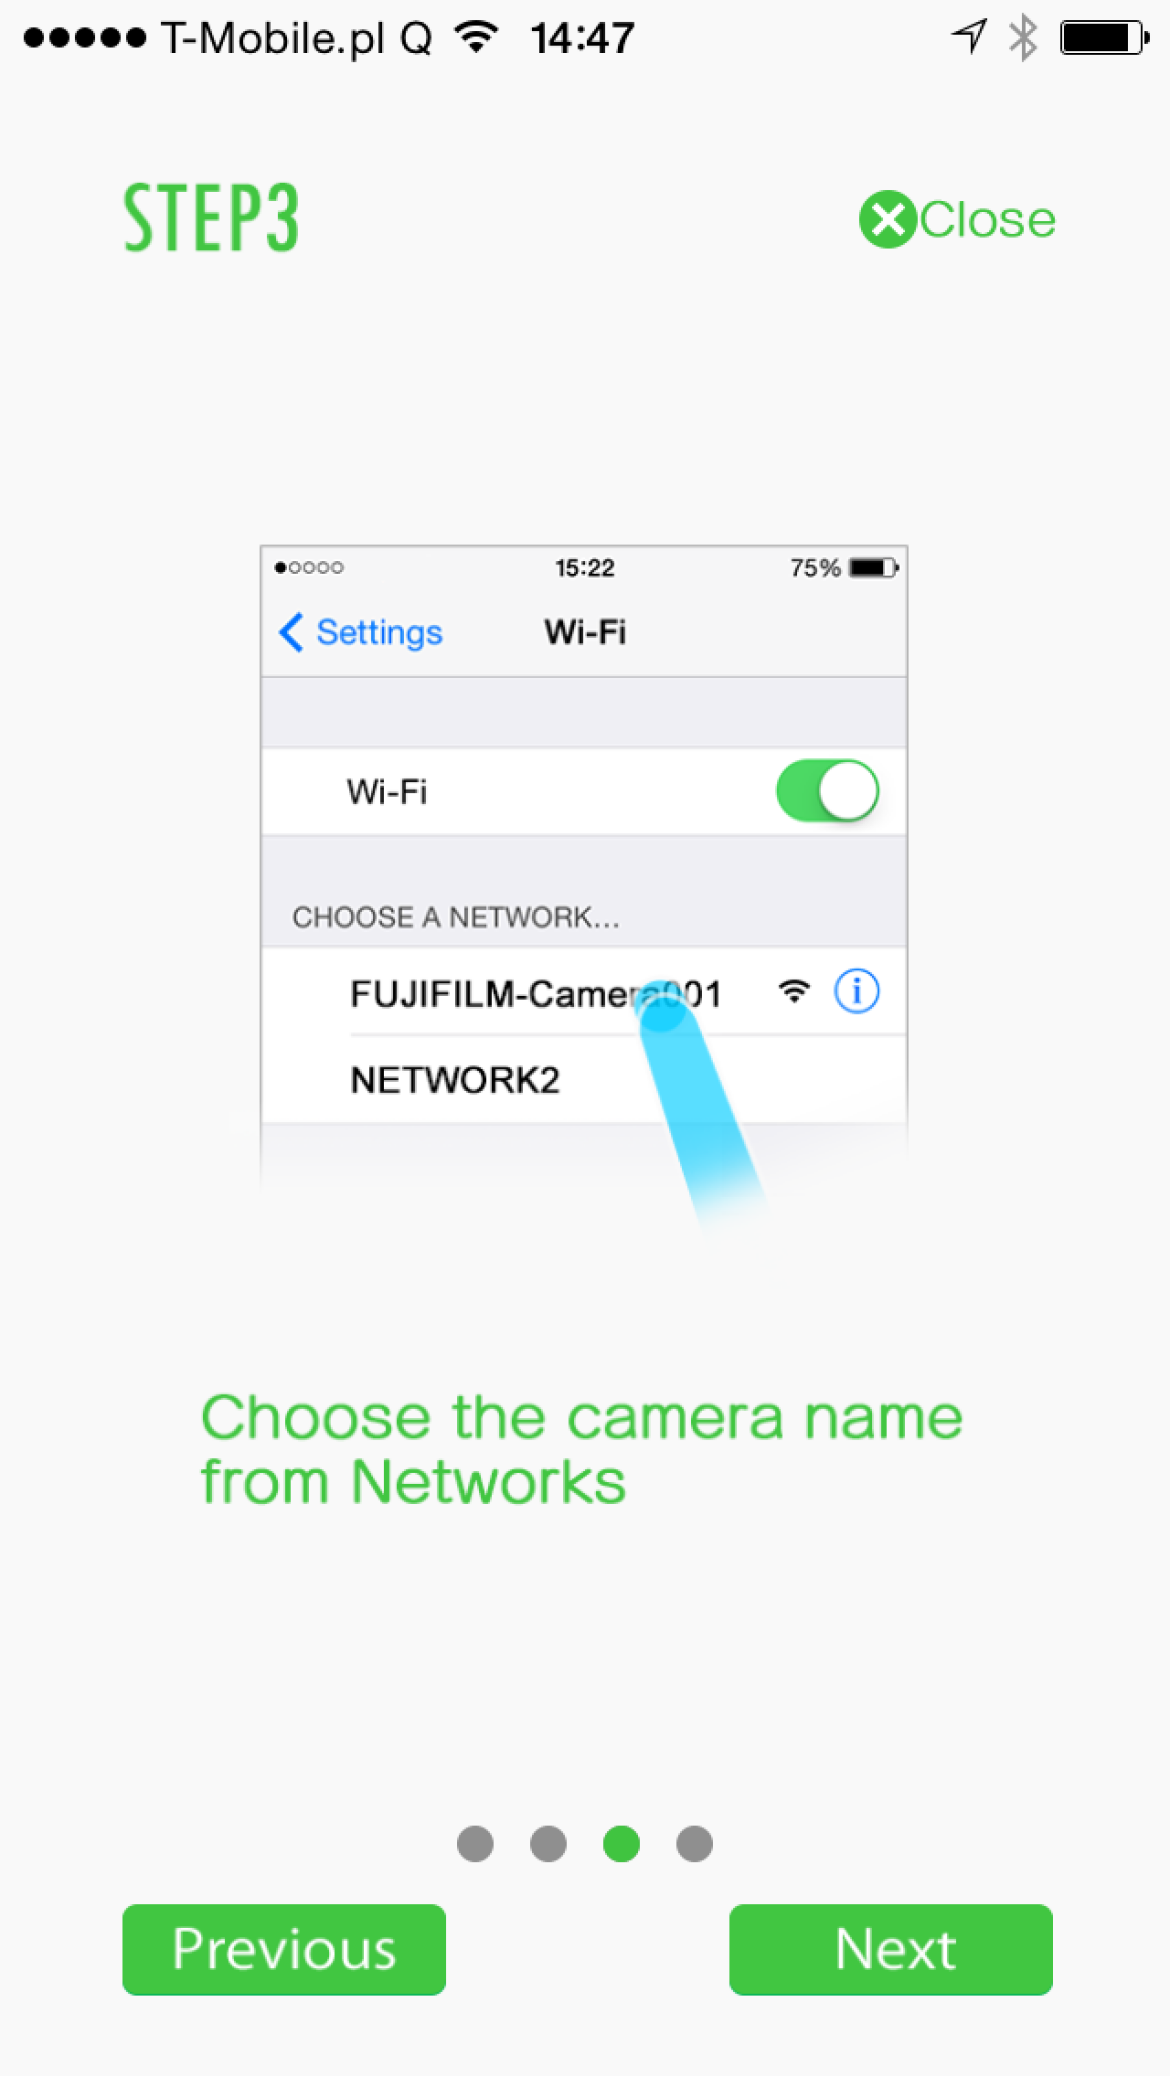 Instrukcja obsługi aplikacji łączącej się z Fujifilm X100T